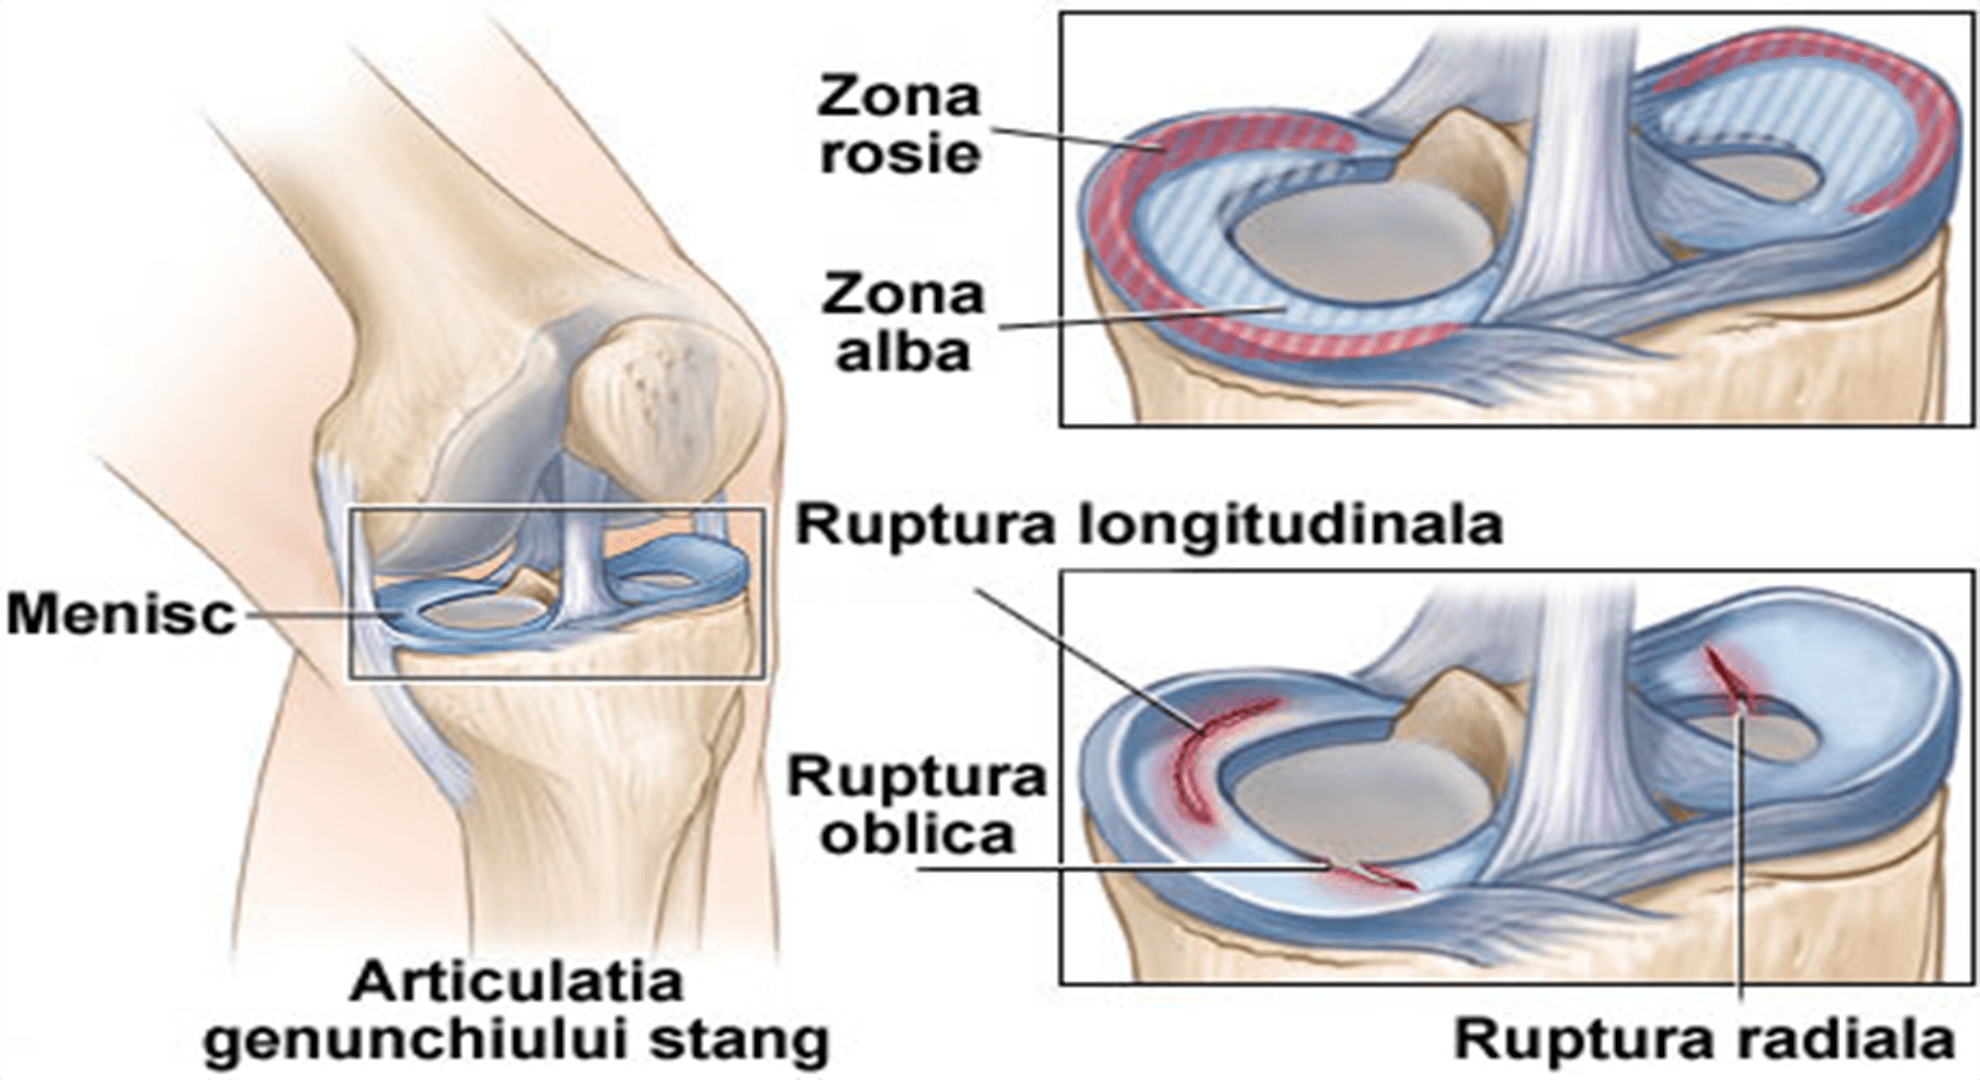 medicament bazat pe dovezi pentru tratamentul artrozei soiuri de artroză a articulației genunchiului și tratament